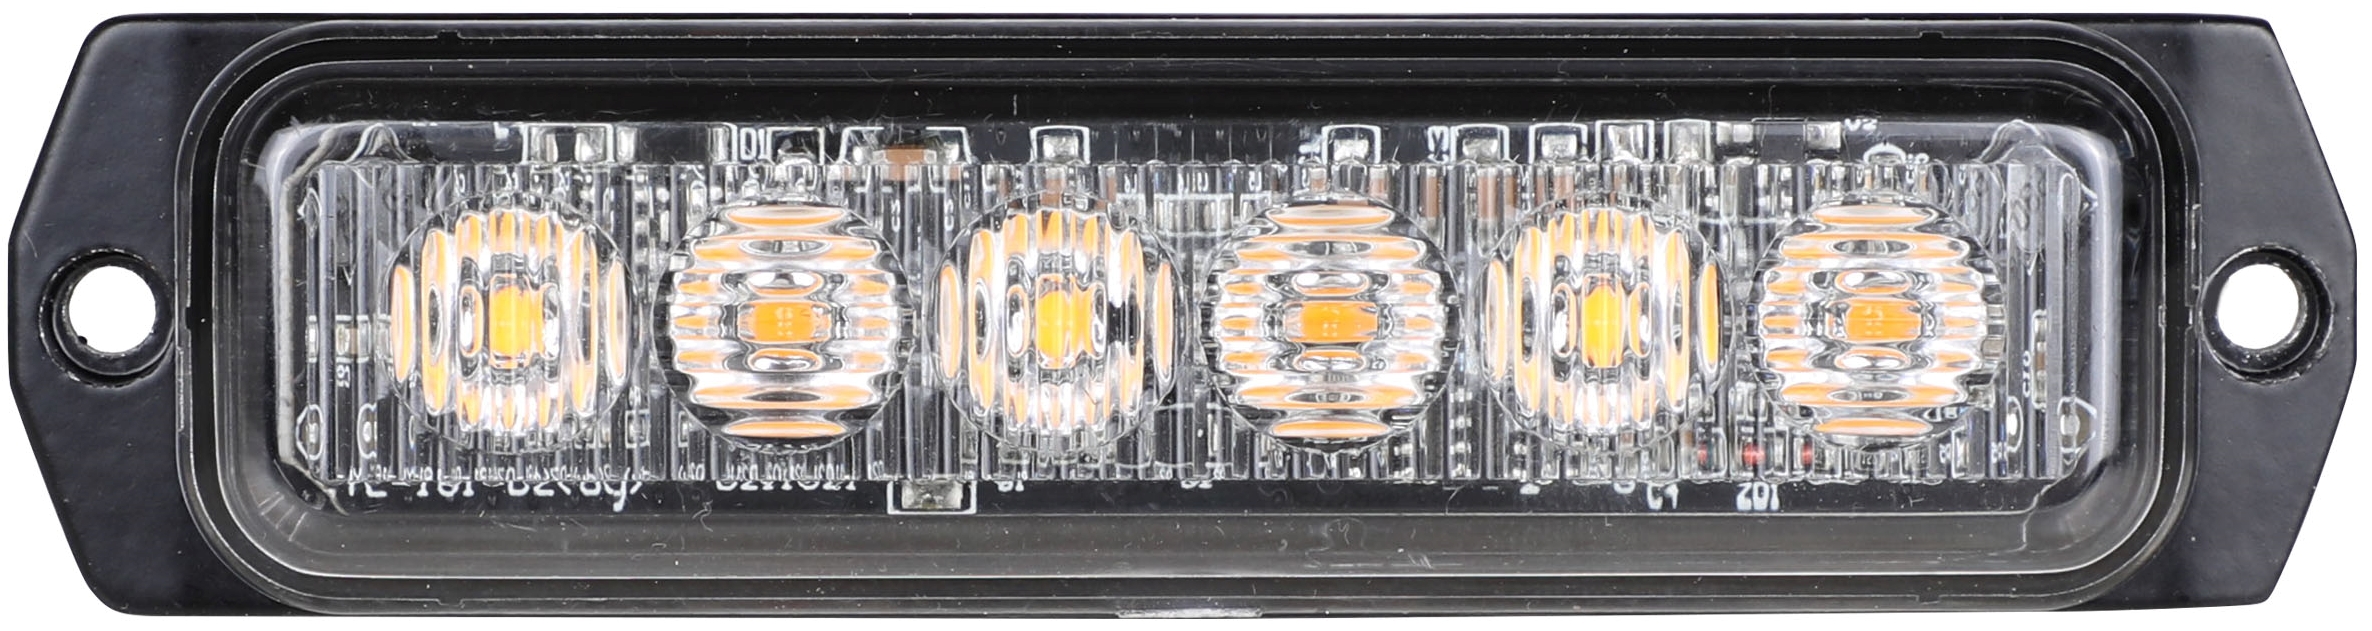 Supplerende blink, Gul, 6-LED, 9-30v, R65, Horisontal+vertikal, 5